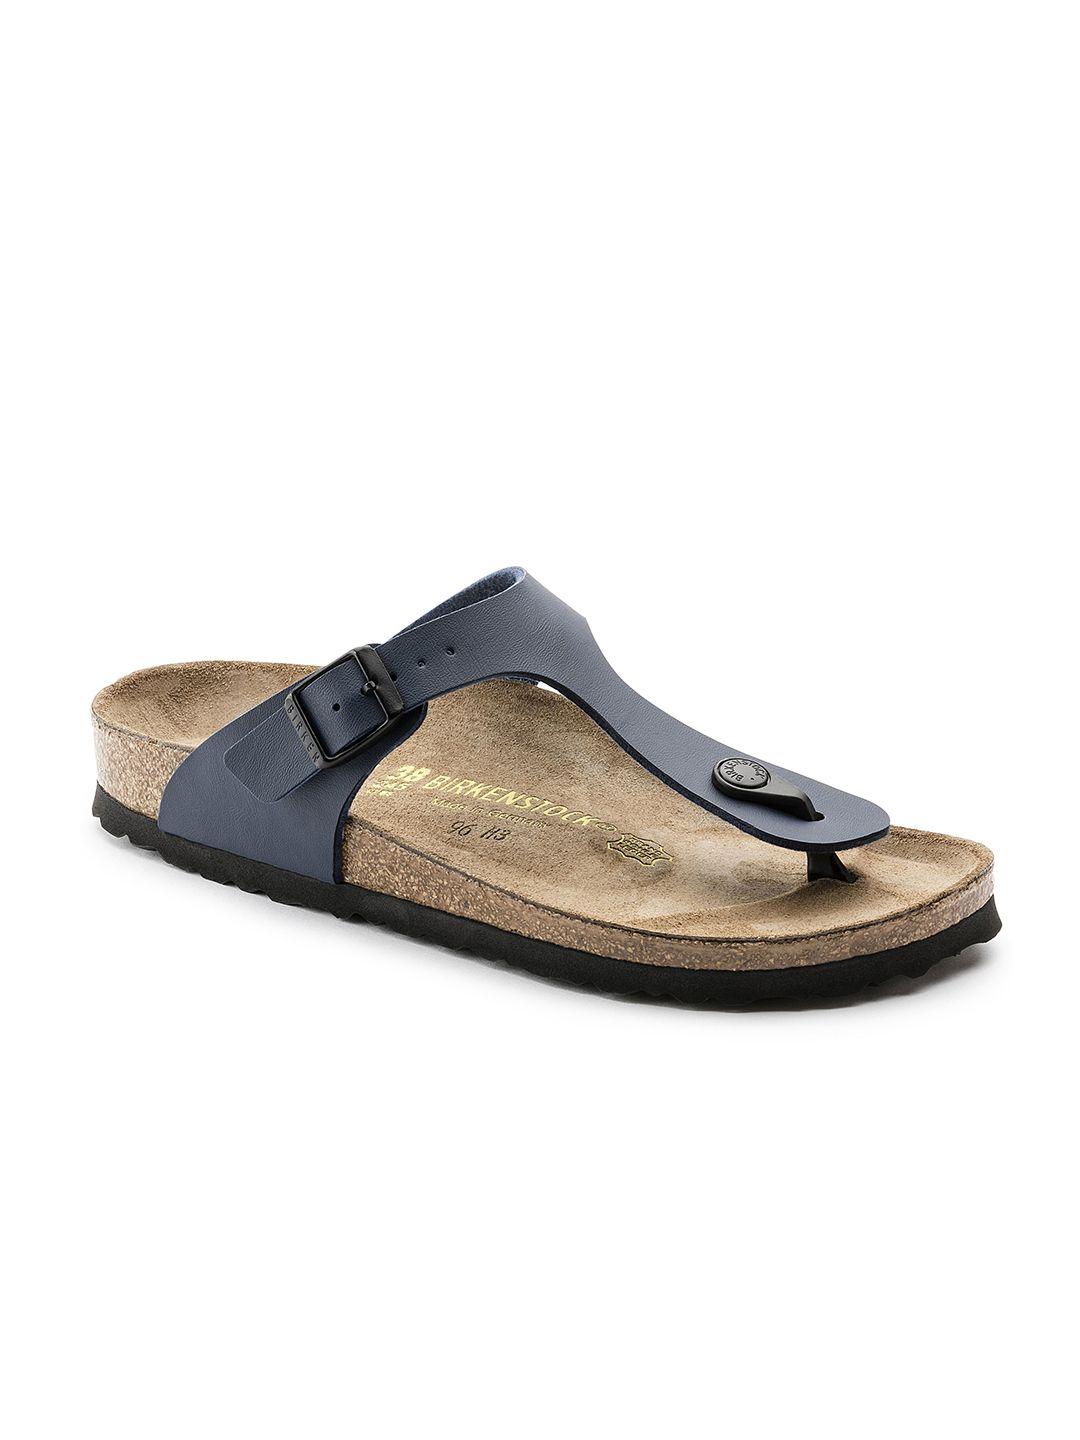 birkenstock-unisex-navy-blue-gizeh-birko-flor-regular-width-comfort-sandals